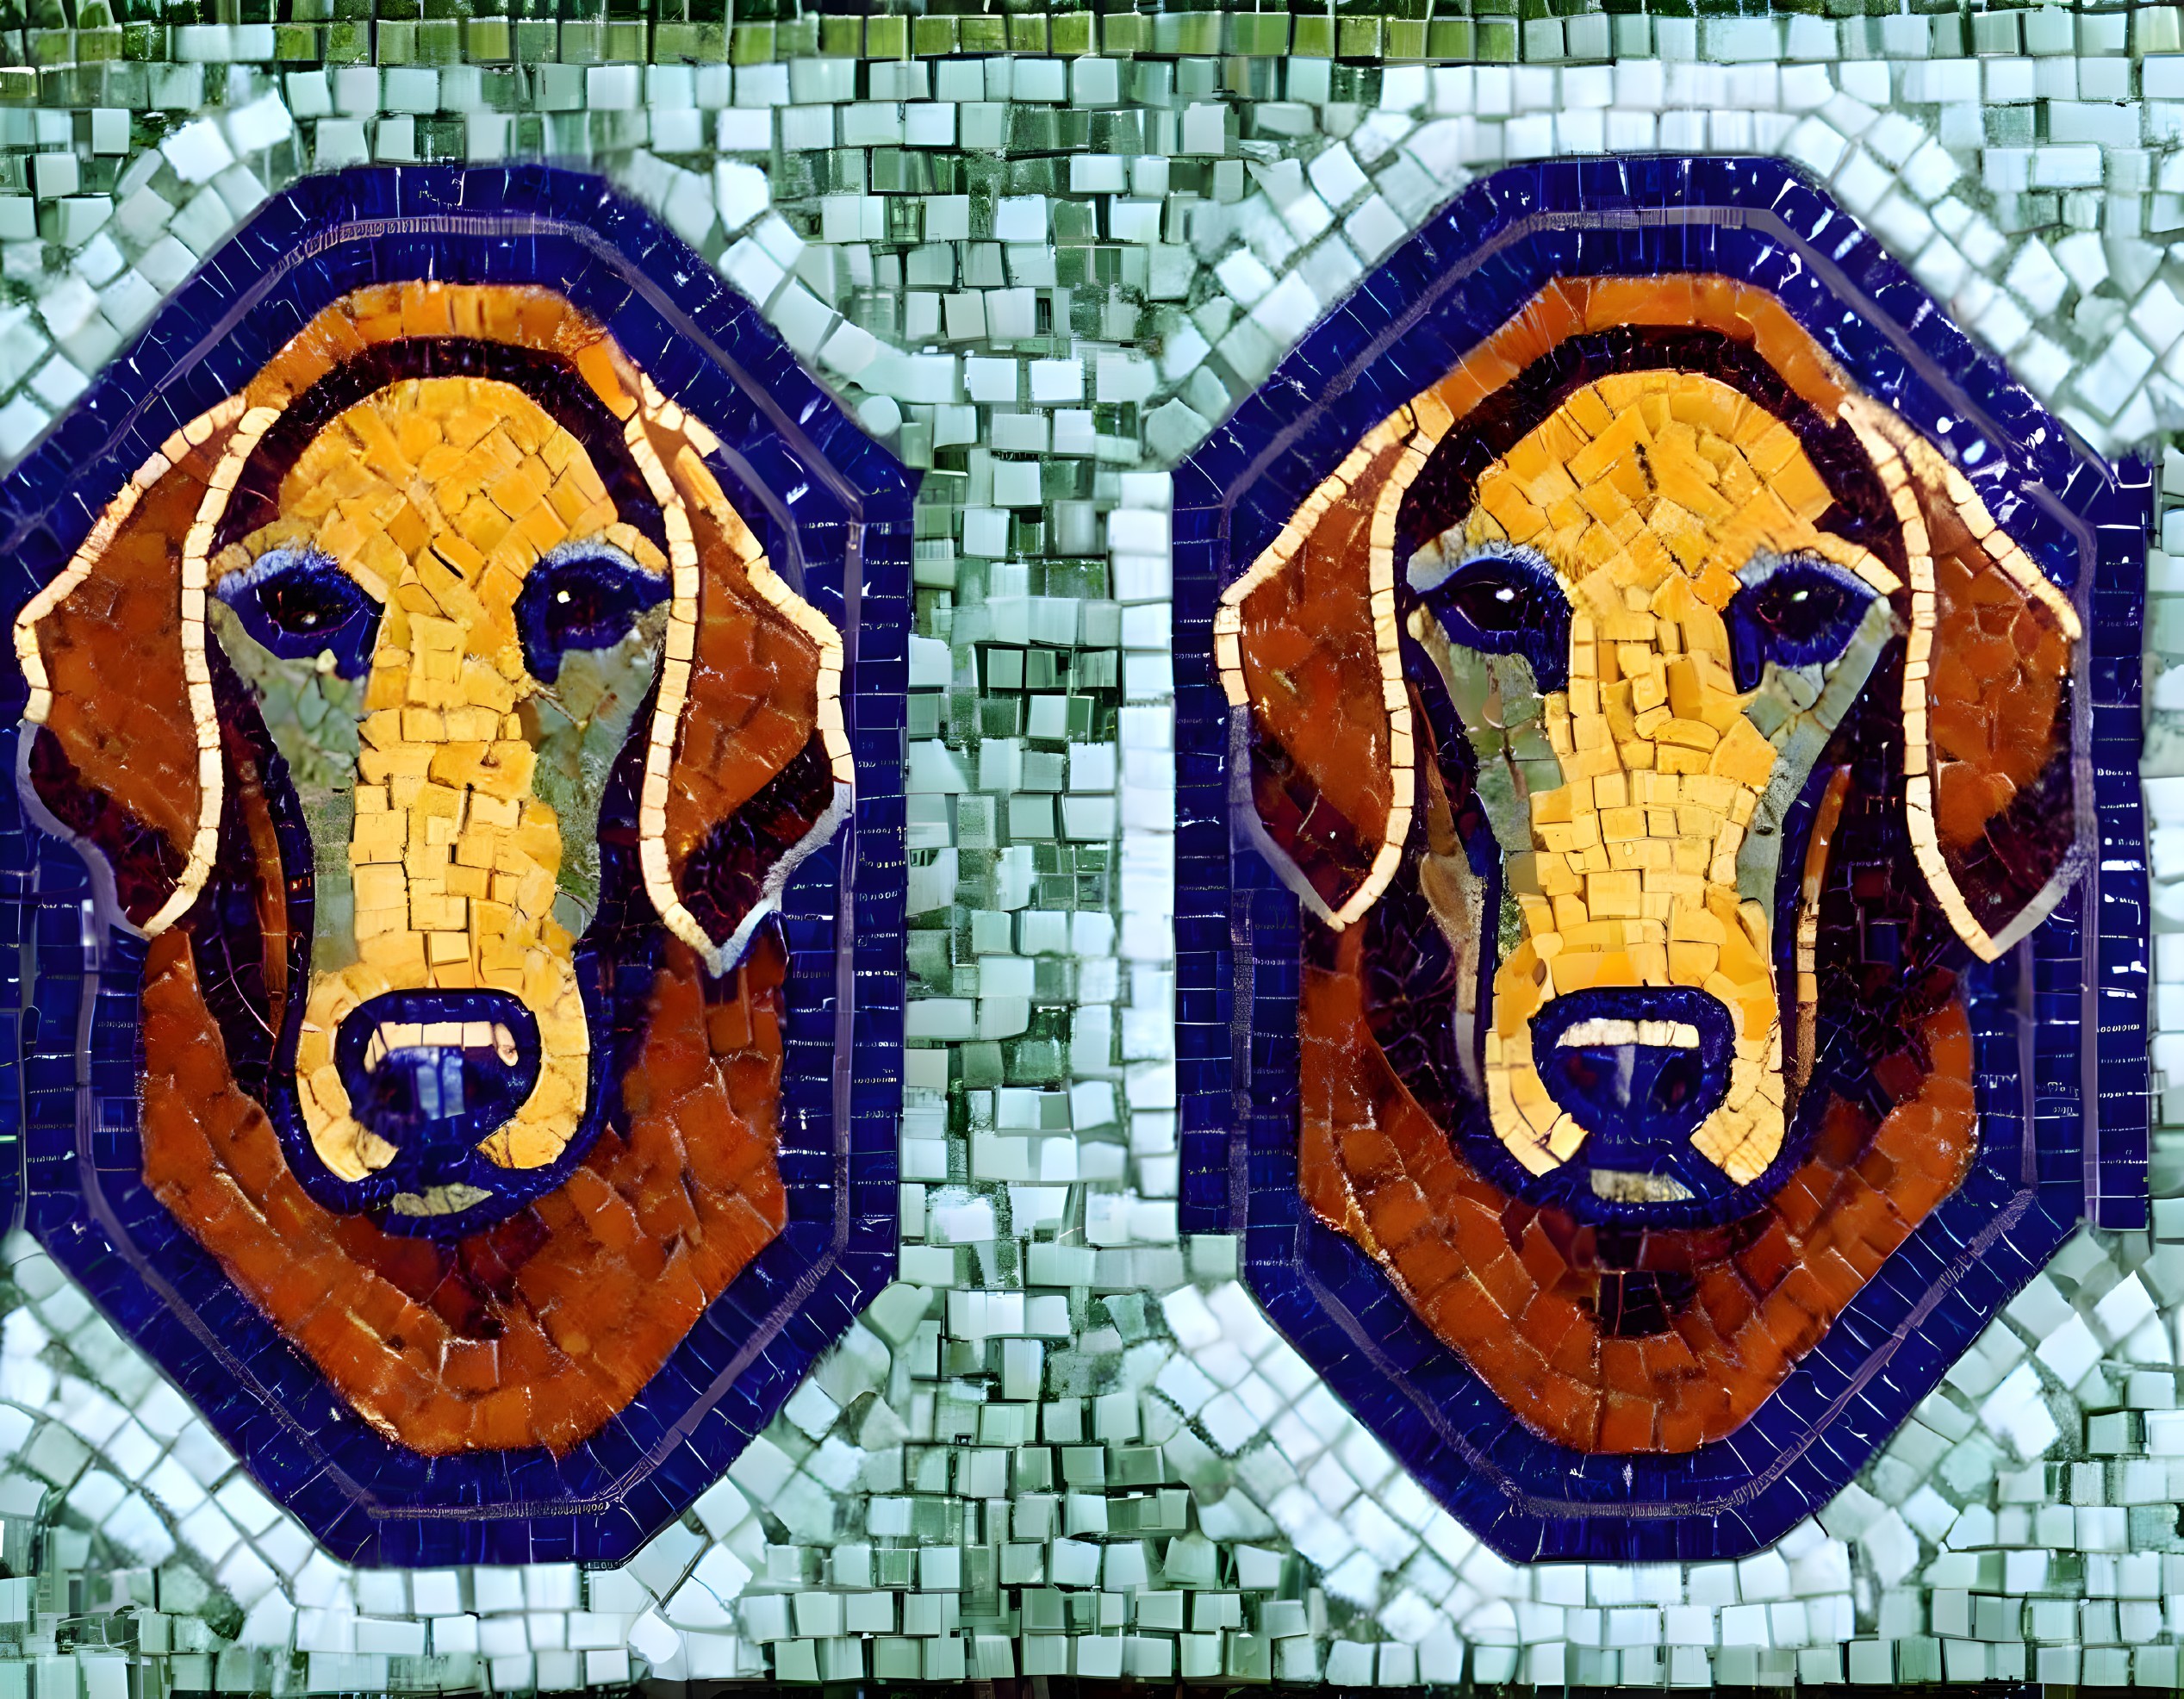 Roman mosaic Weimaraners